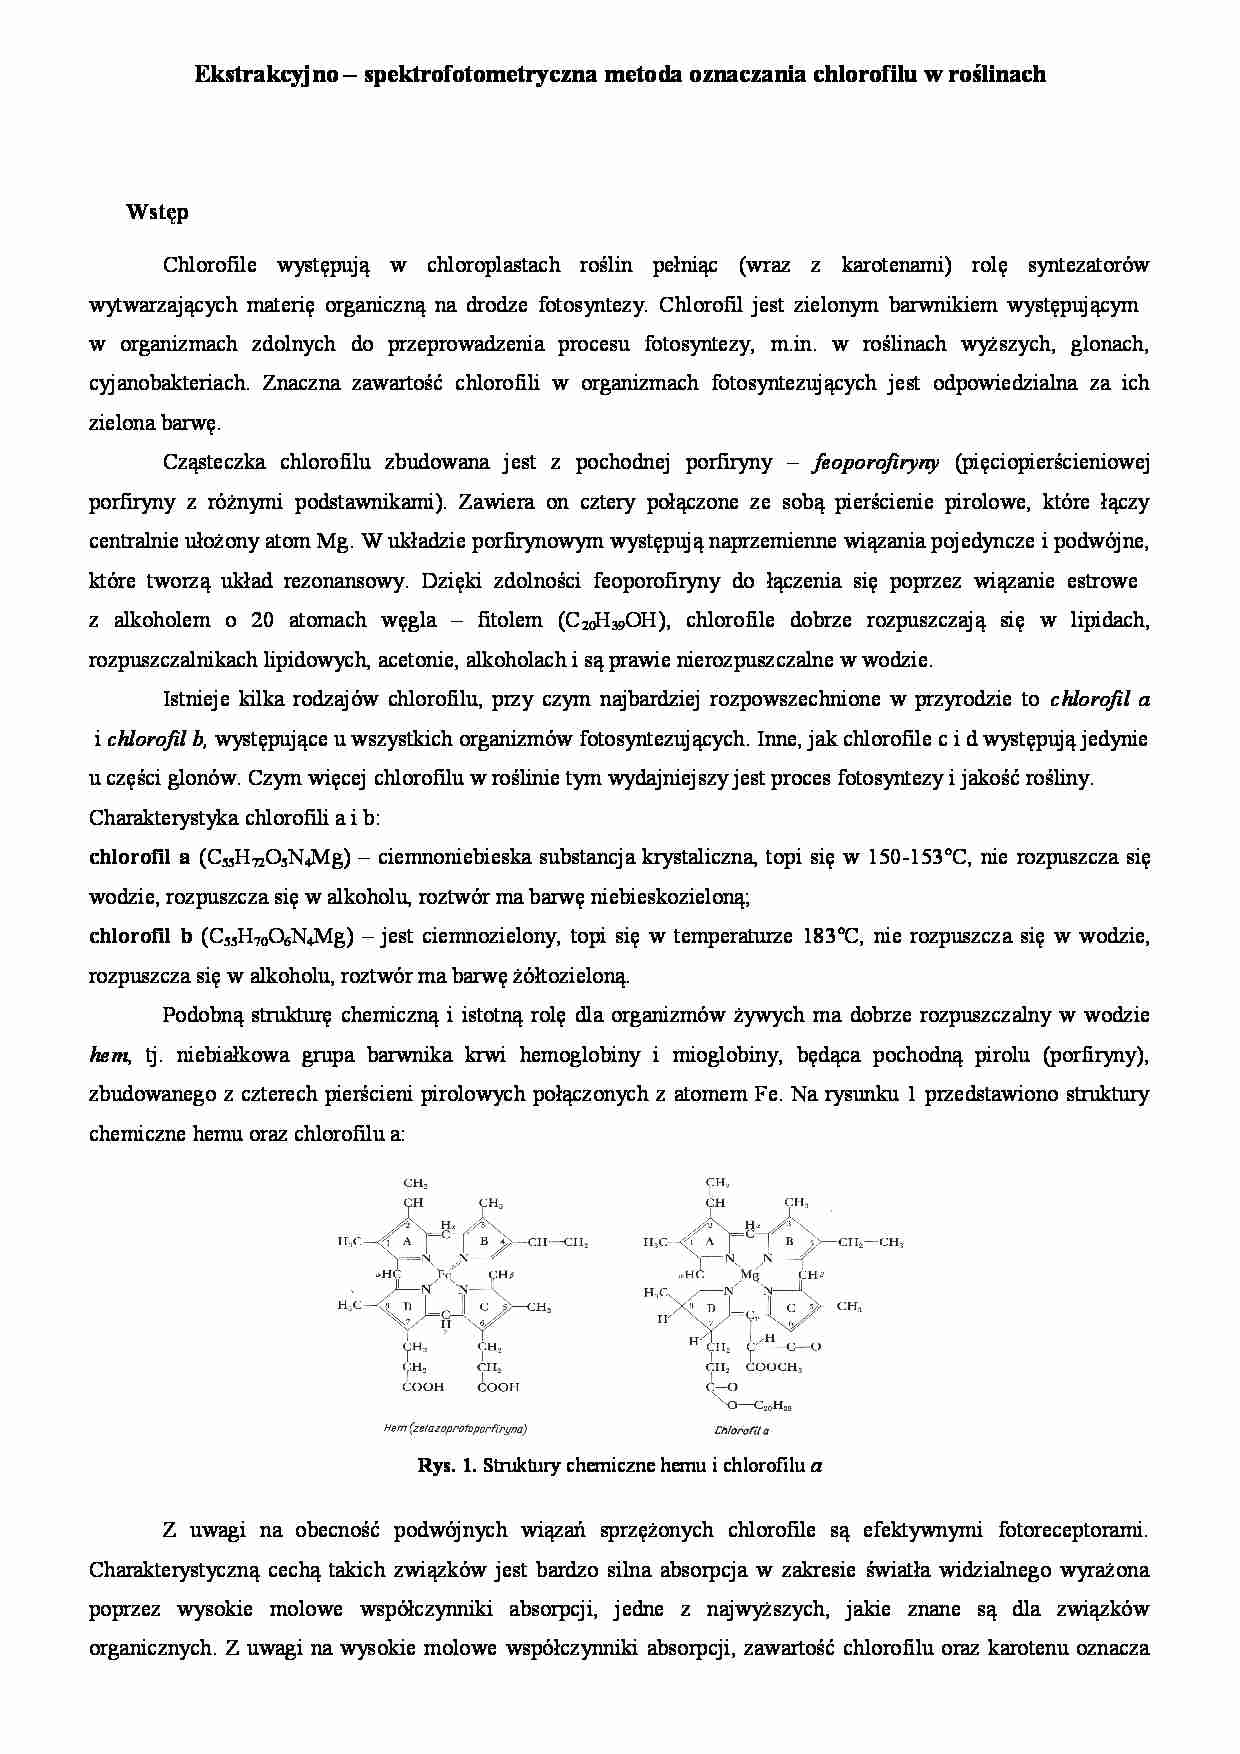 Ekstrakcyjno-spektrofotometryczna metoda oznaczania chlorofilu - wykład - strona 1